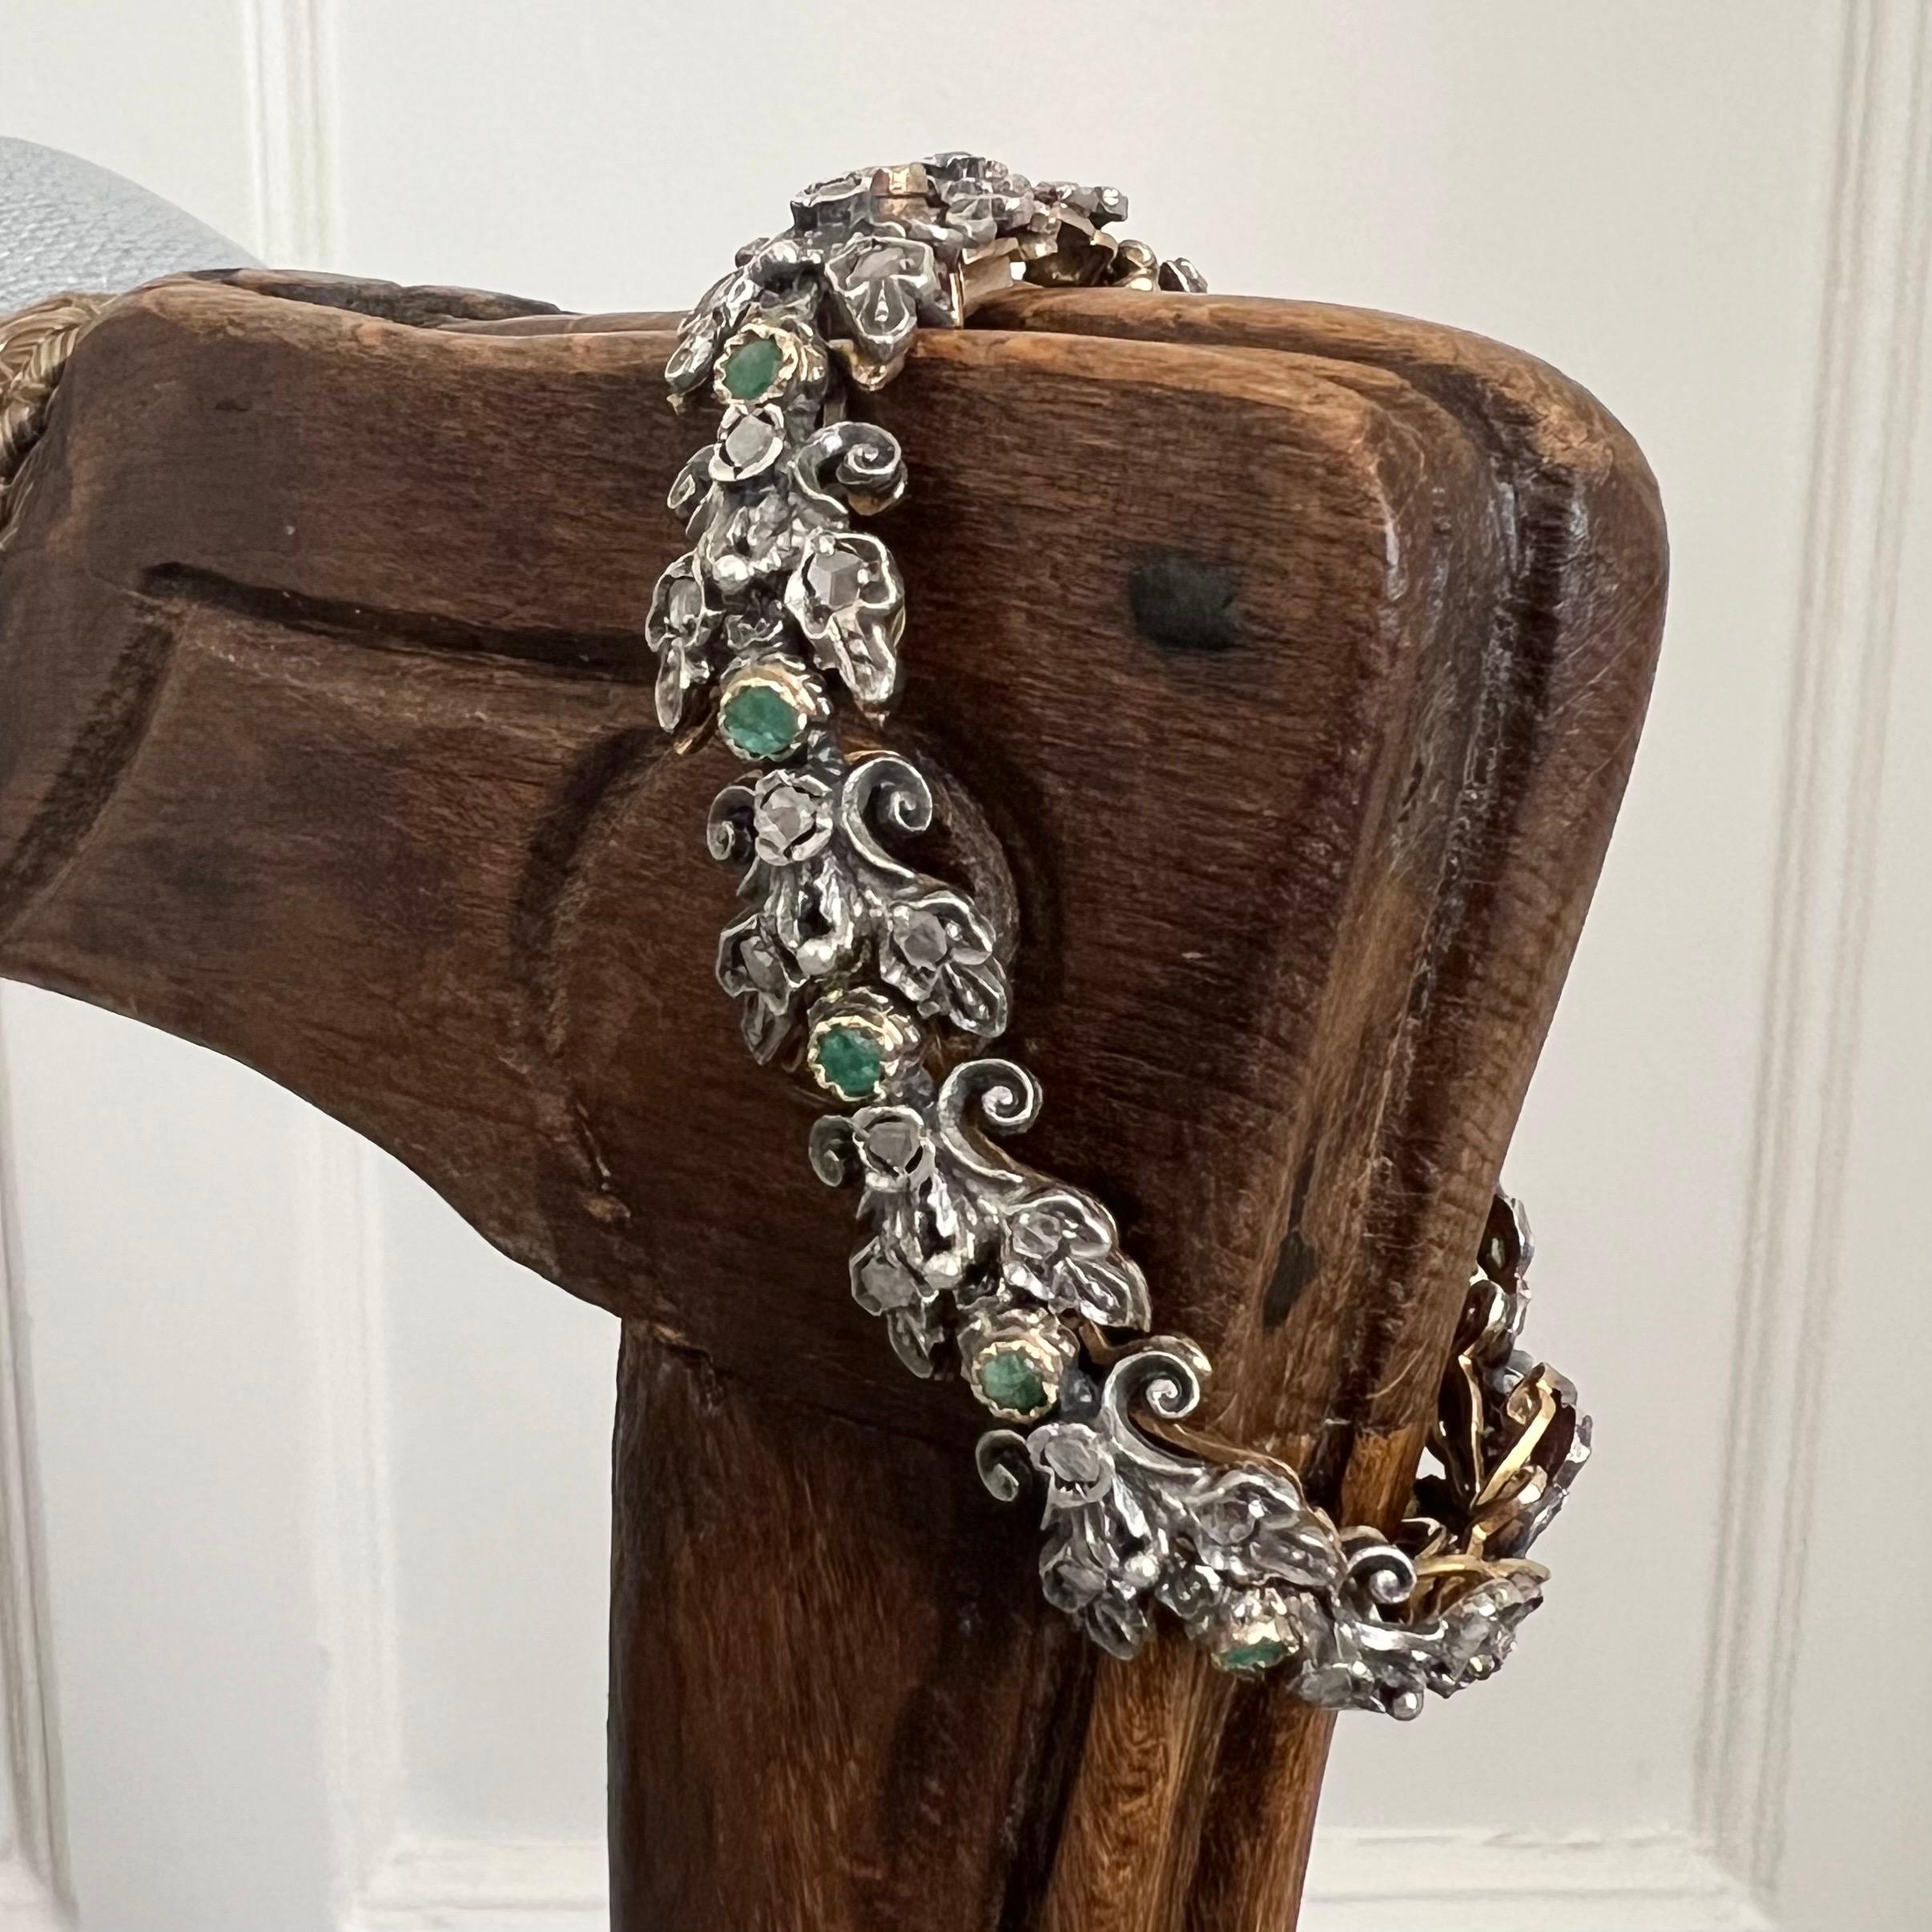 Ein antikes Edwardianisches Gliederarmband aus 18 Karat Gold und Silber, besetzt mit leuchtenden Smaragden und Diamanten. Das Armband besteht aus vierzehn facettierten Smaragdsteinen mit einer lebhaften grünen Farbe. Die Smaragde sind von vielen